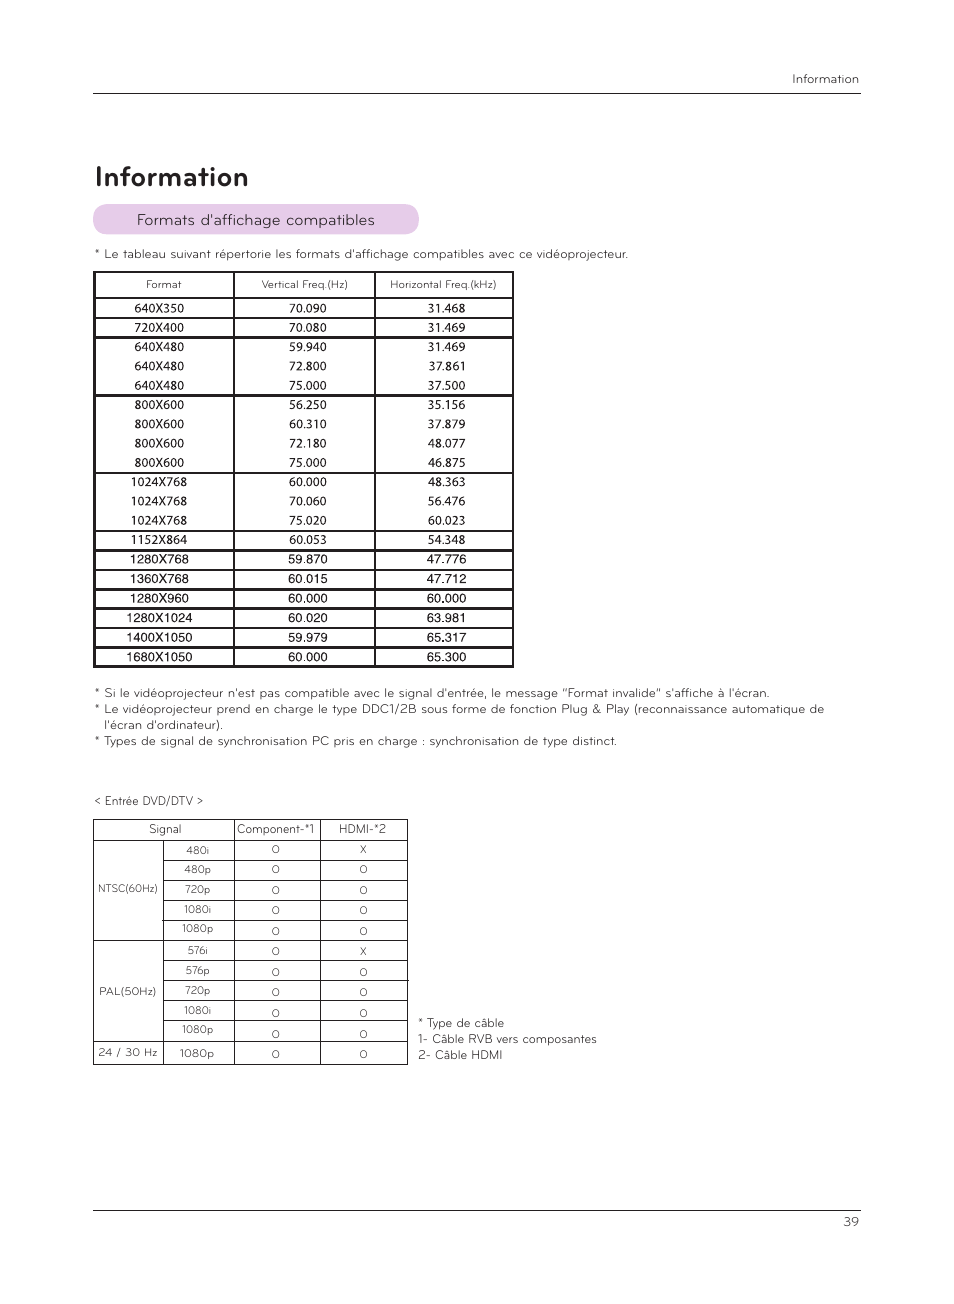 Information, Formats d'affichage compatibles | LG HS200G Manuel d'utilisation | Page 39 / 42